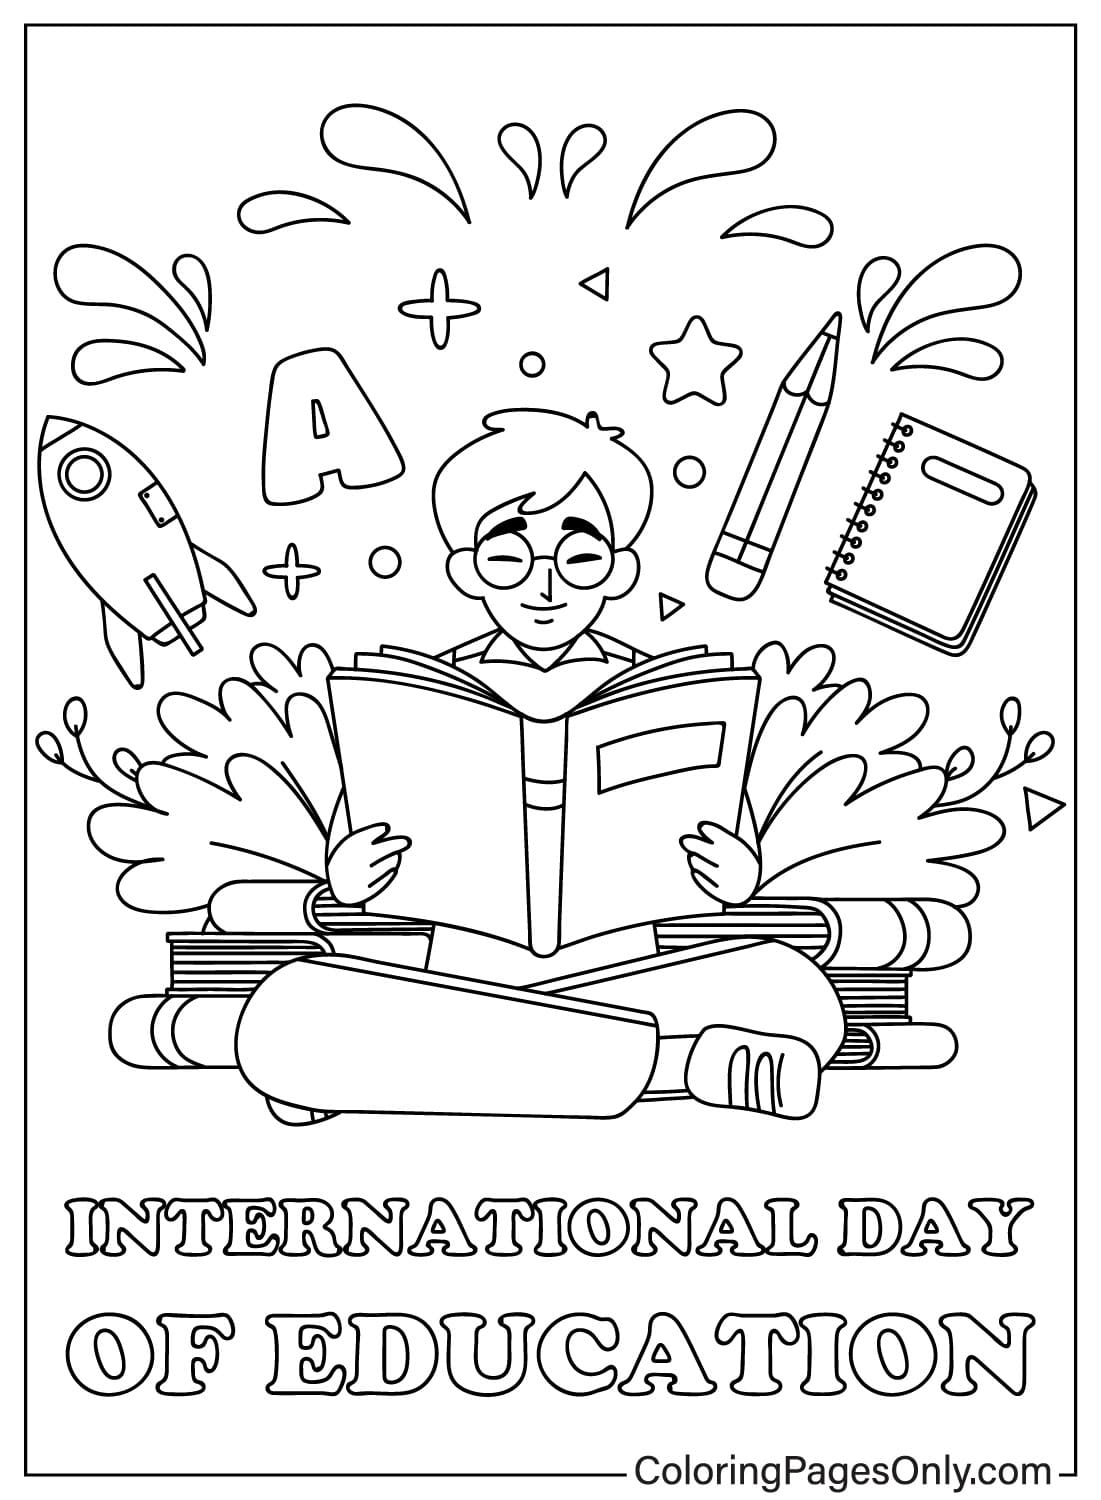 Página para colorear imprimible del Día Internacional de la Educación del Día Internacional de la Educación